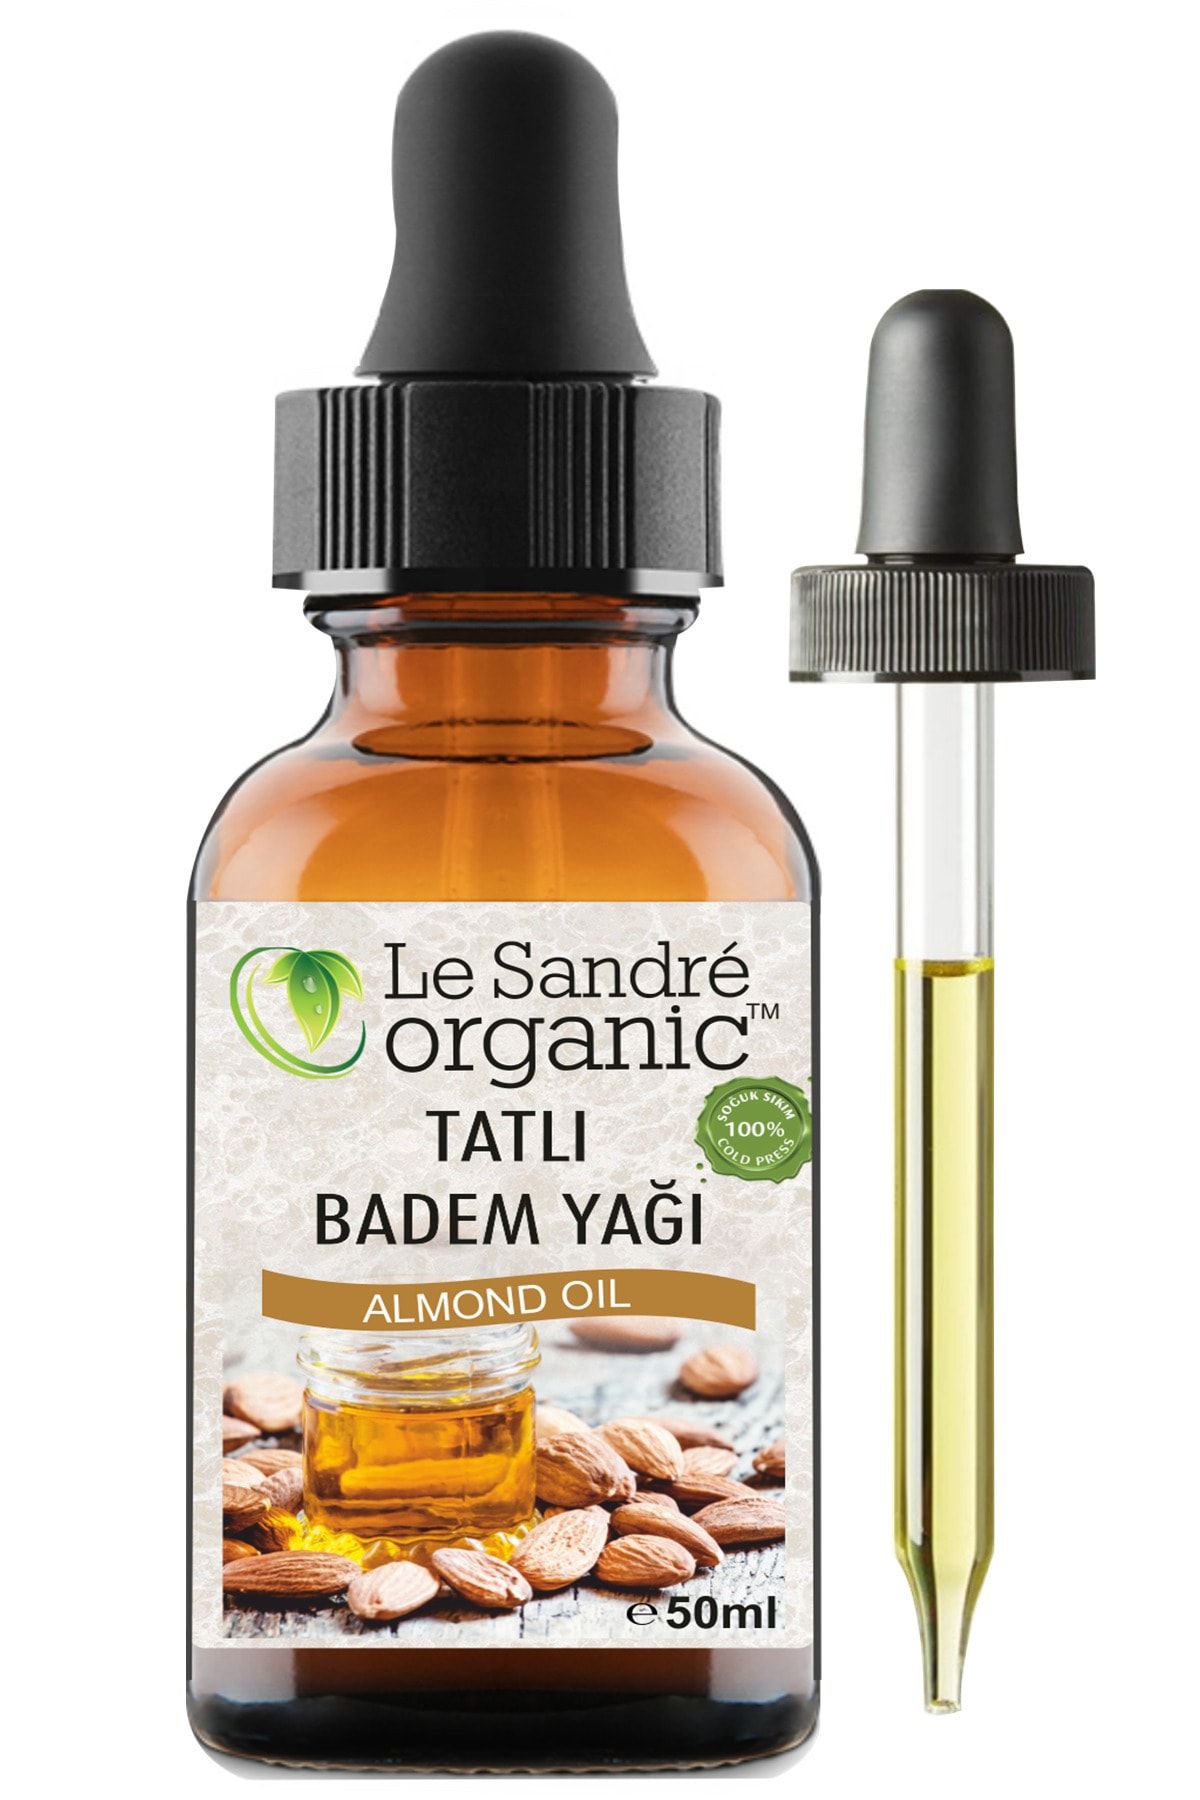 Le'Sandre Organics Badem Yağı Tatlı 50 ml Soğuk Sıkım